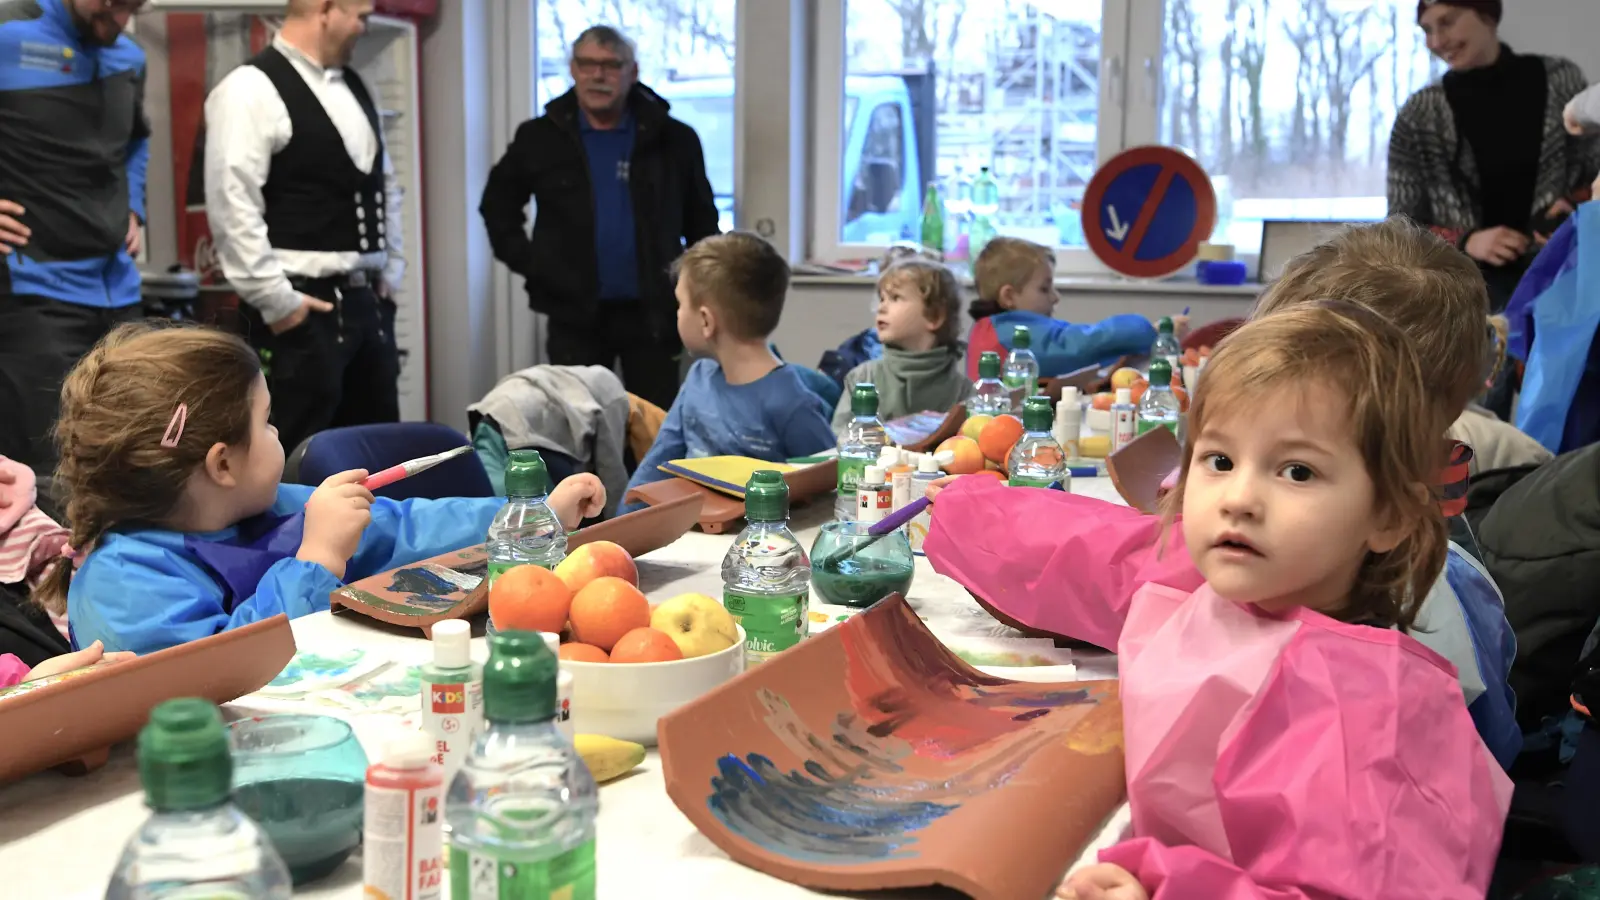 Der Besuch der Kindergartengruppe bei Ahrens war ein voller Erfolg und hat beiden Seiten viel Spaß bereitet. (Foto: nd)